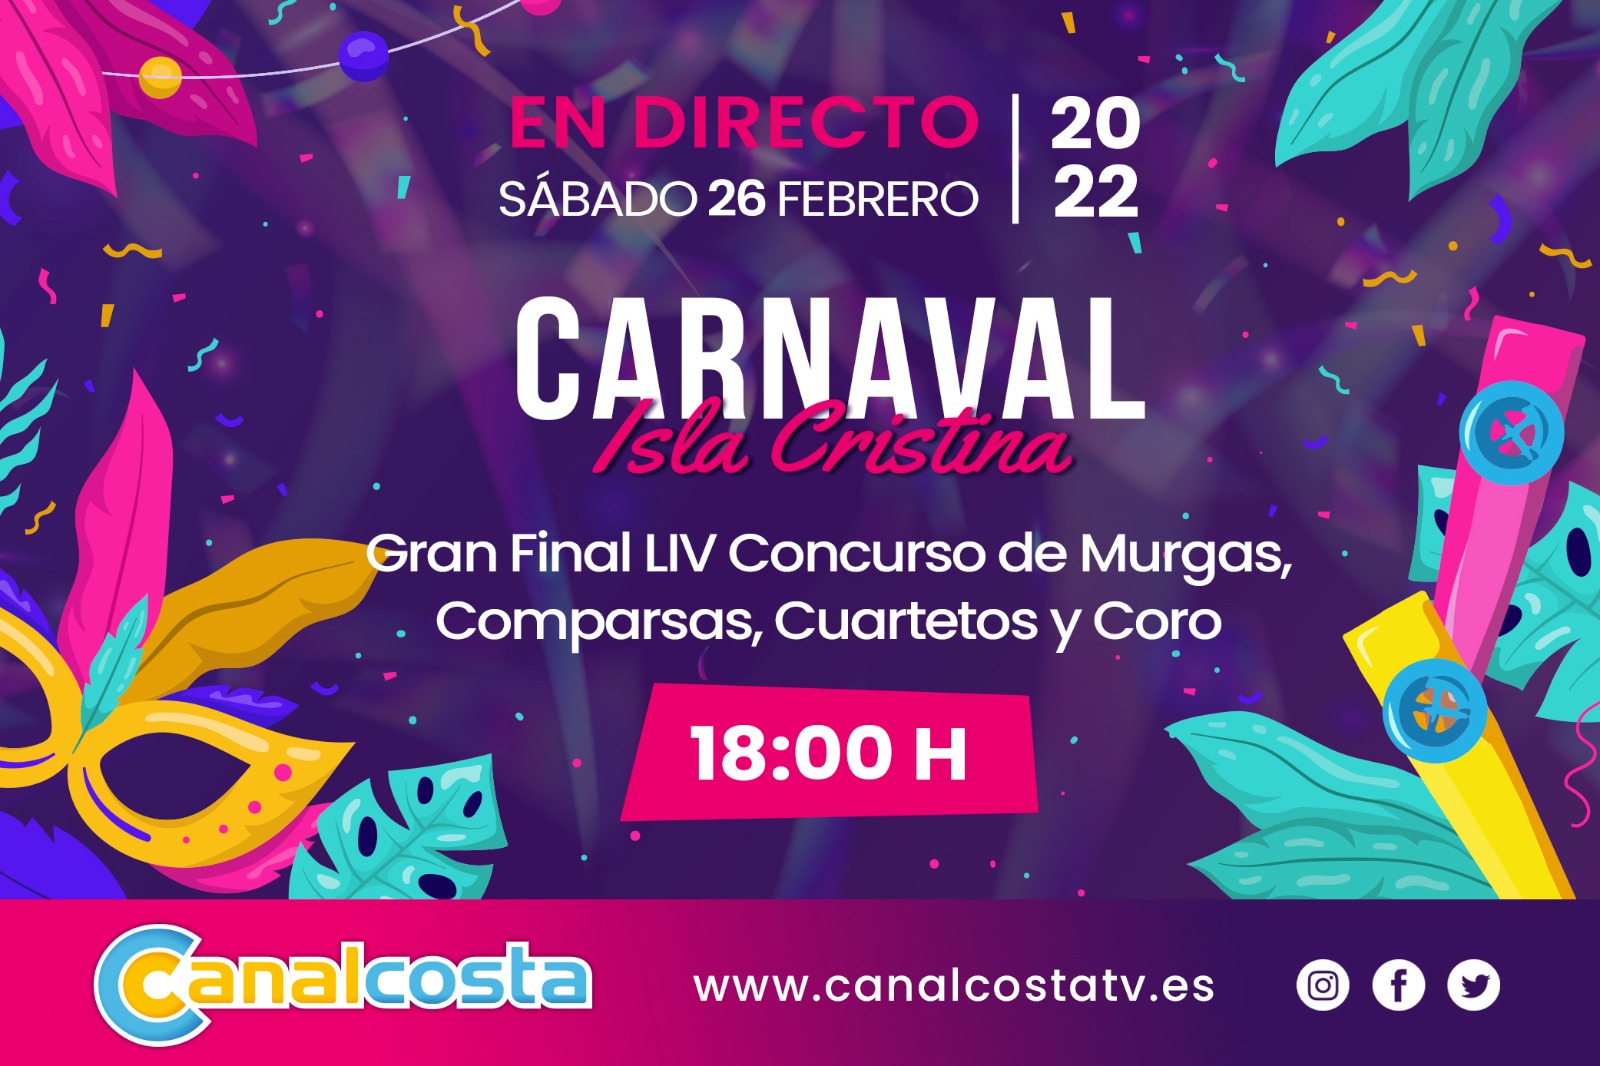 Disfruta de la Final del Carnaval de Isla Cristina en Canalcosta Televisión